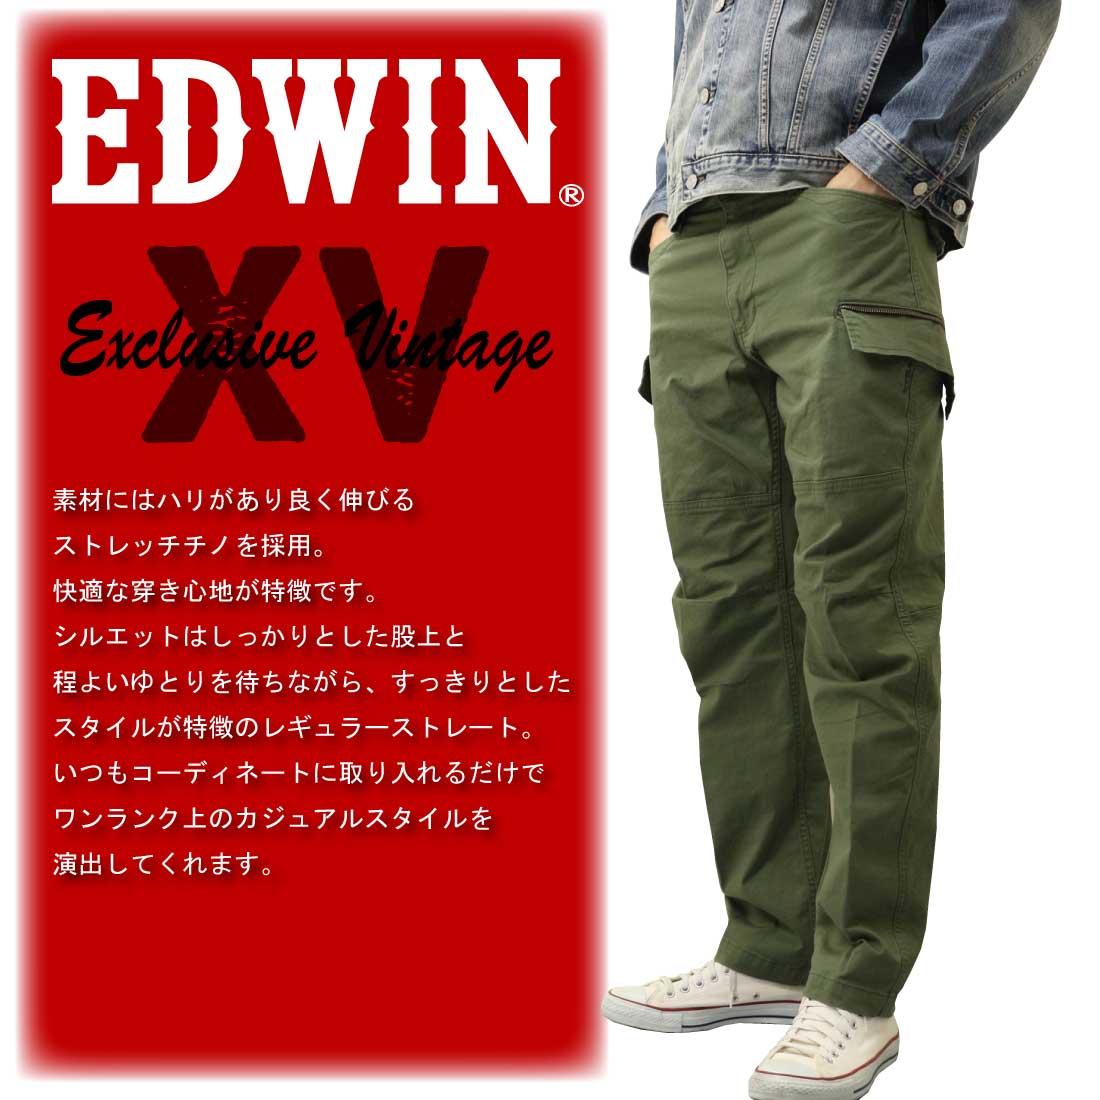 エドウィン EDWIN XV カーゴパンツ EXK02 ストレッチ パンツ メンズ XVシリーズ カジュアル Exclusive Vintage  レギュラーストレート